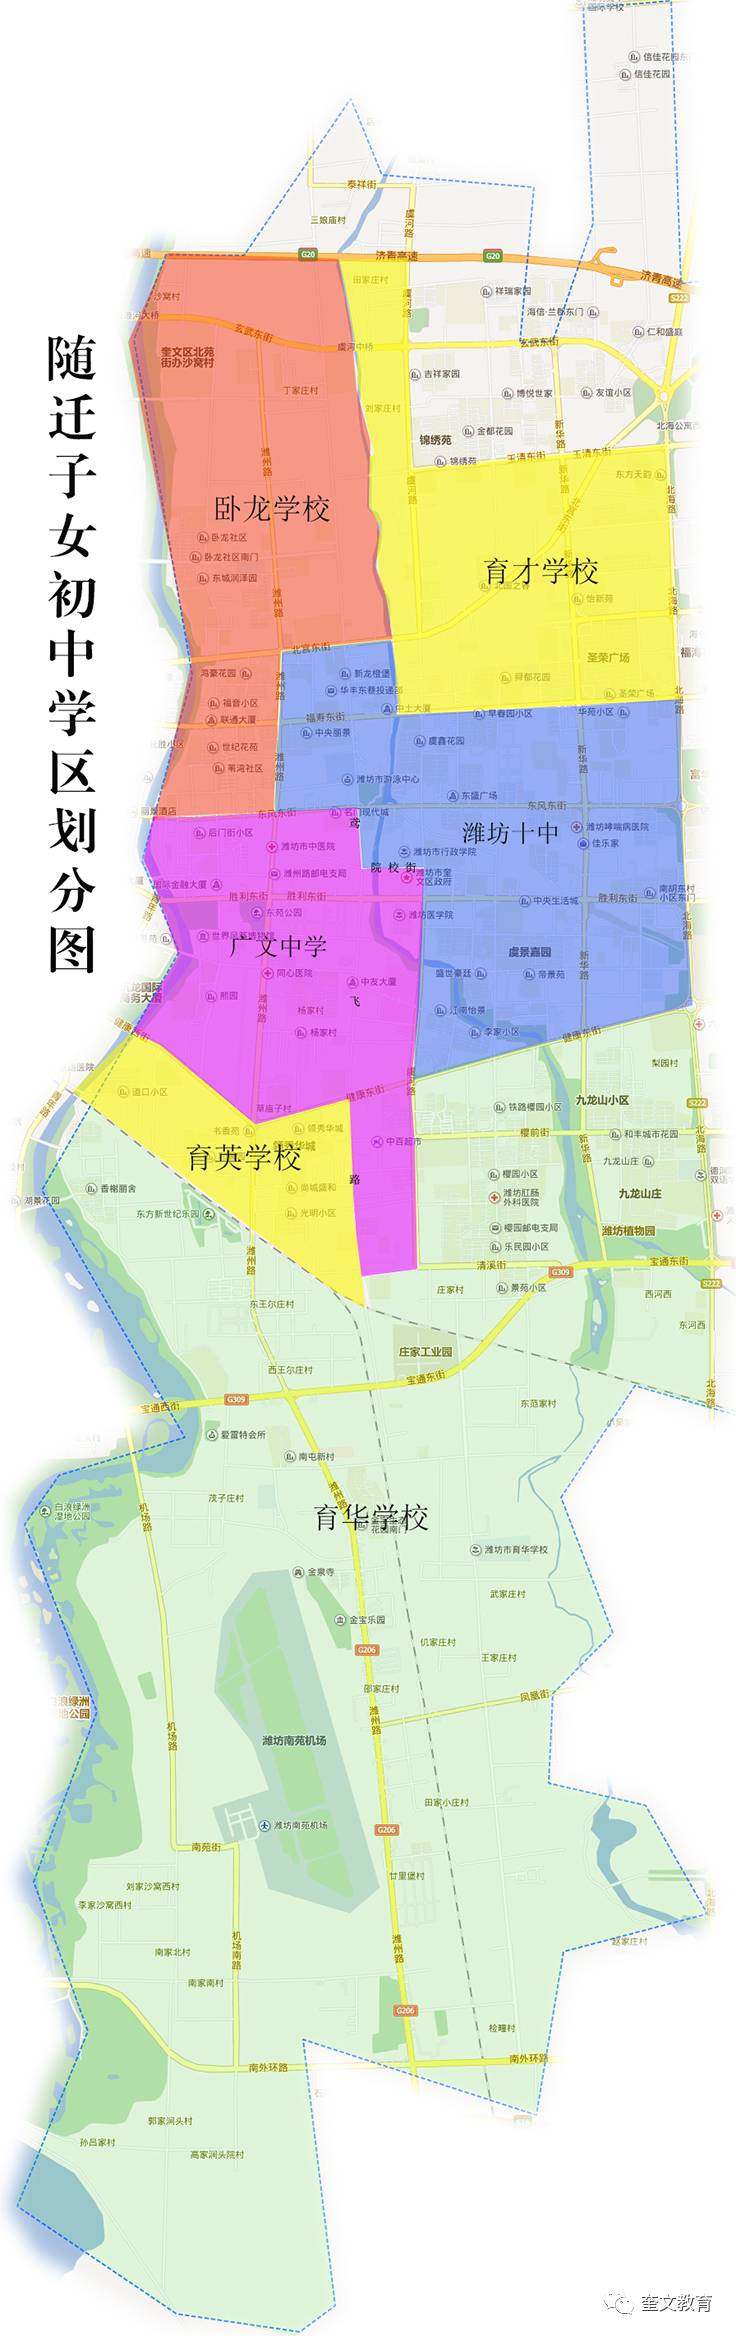 4、北海初中区划：潍坊高新区北海小学区如何划分？ 